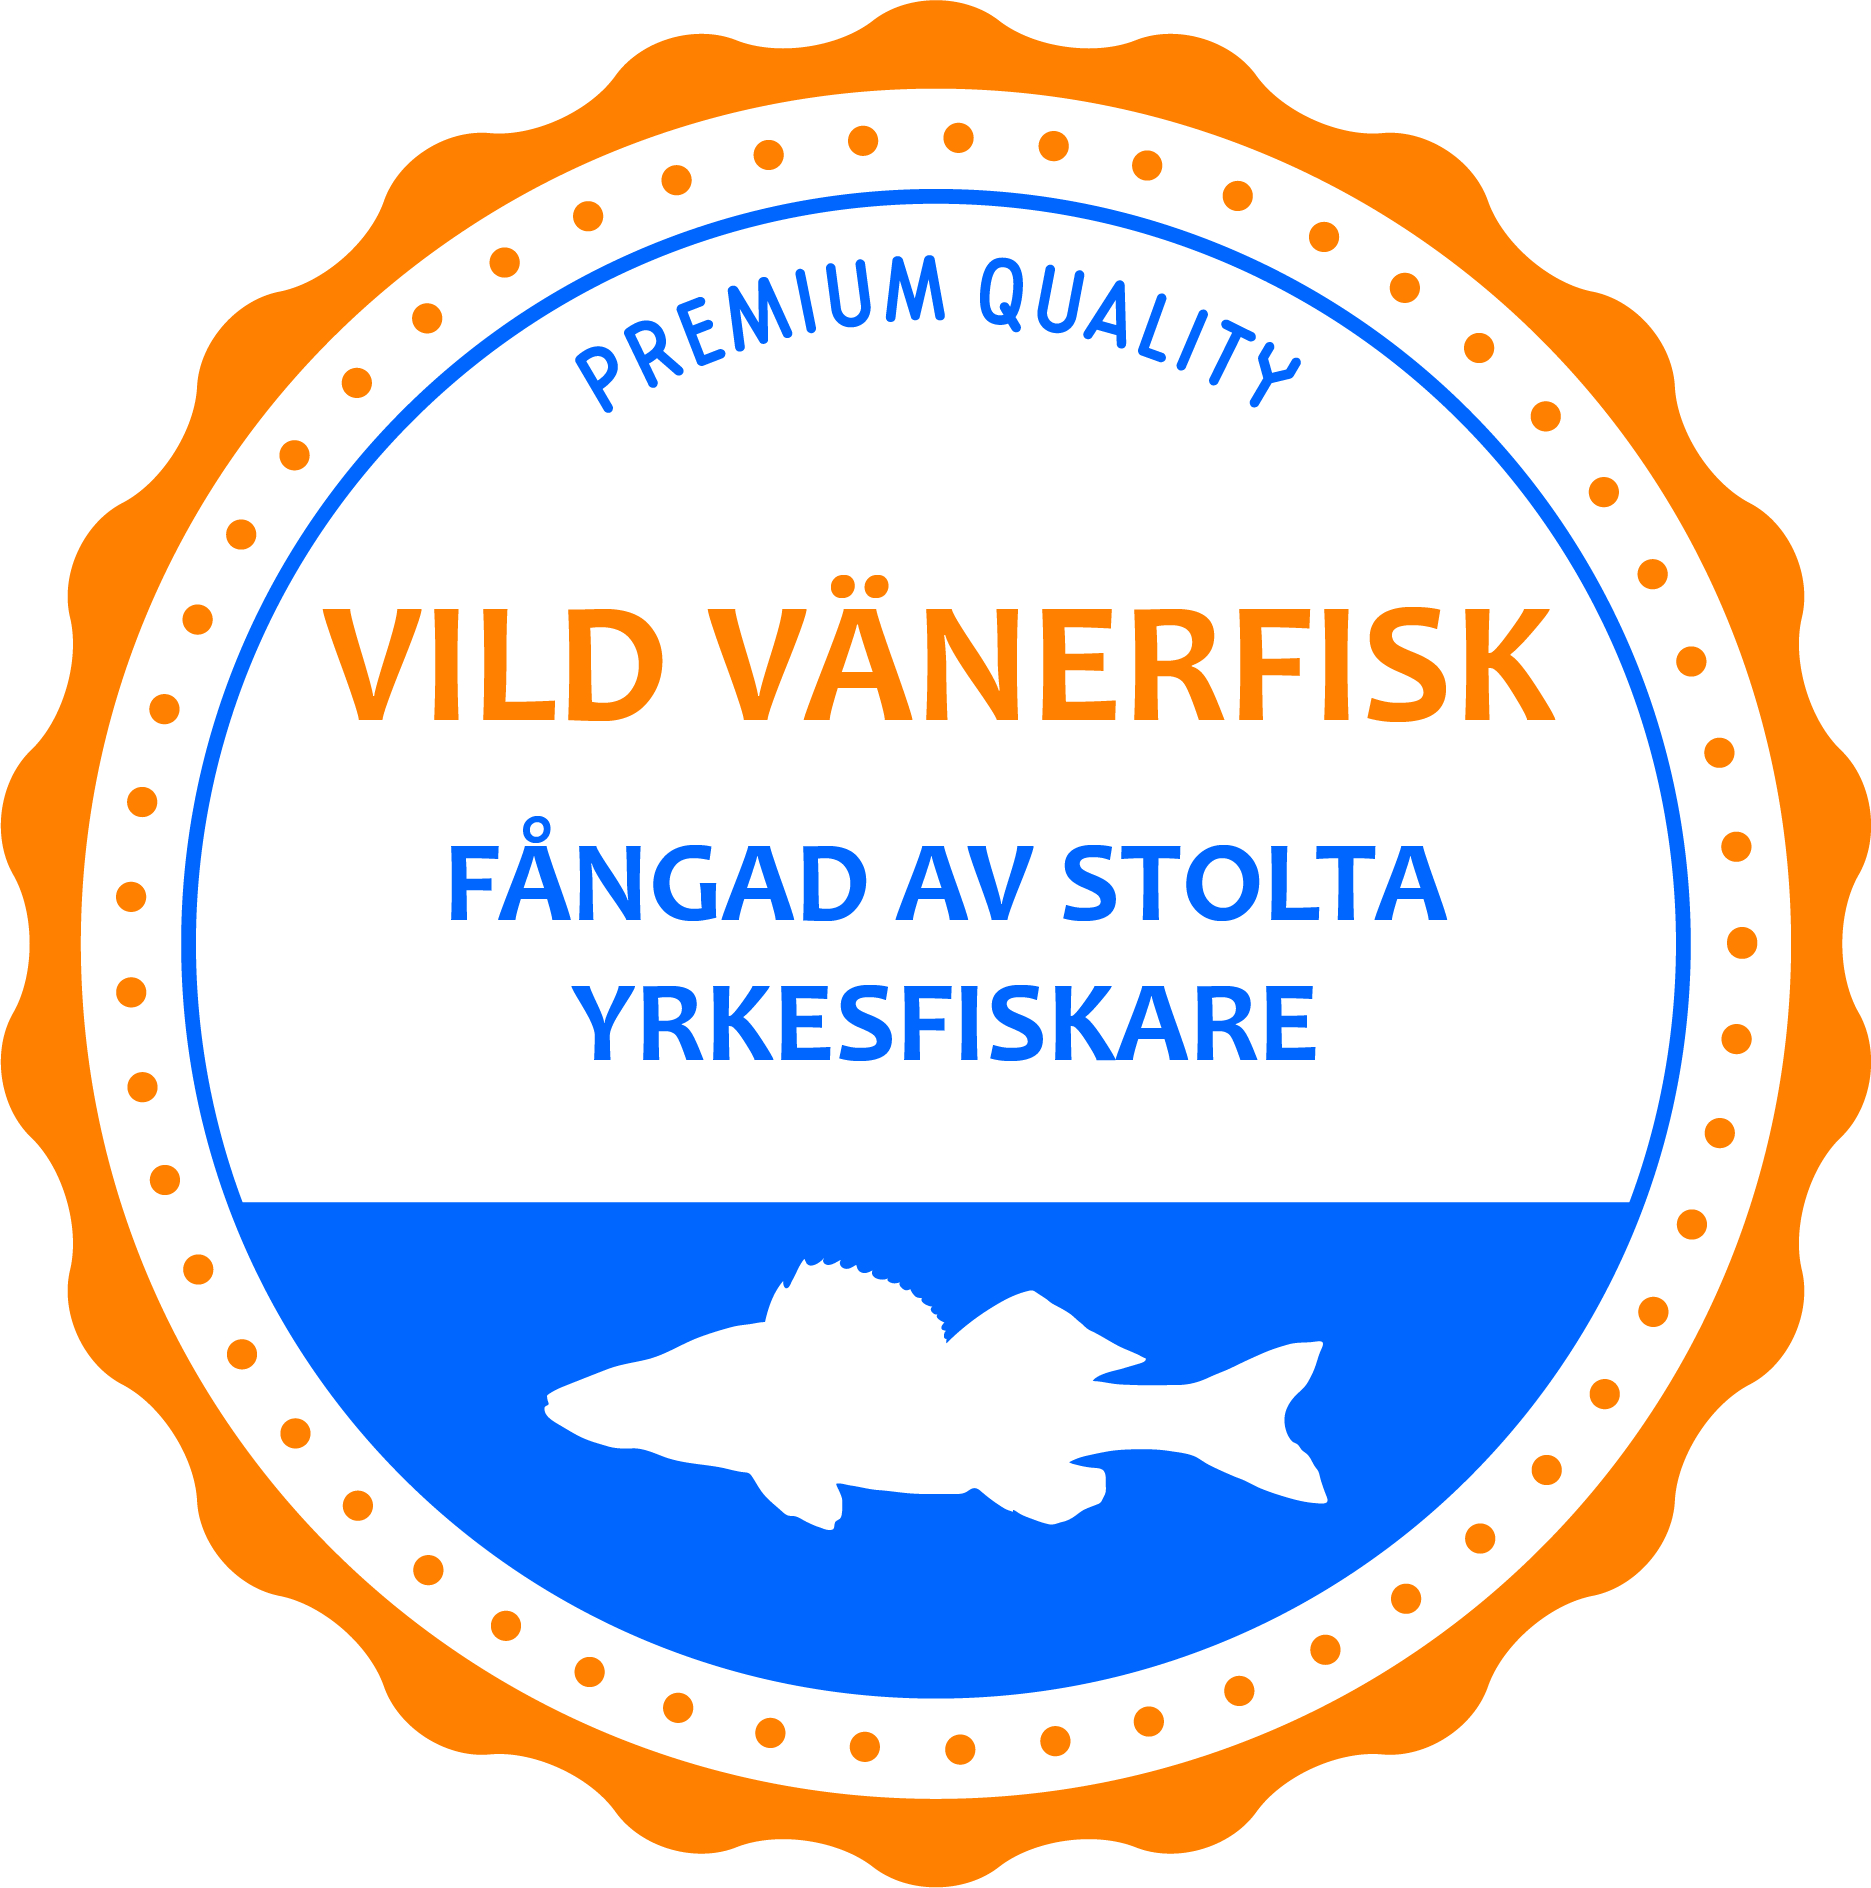 Vild Vänerfisk fångad av stolta yrkesfiskare premium quality